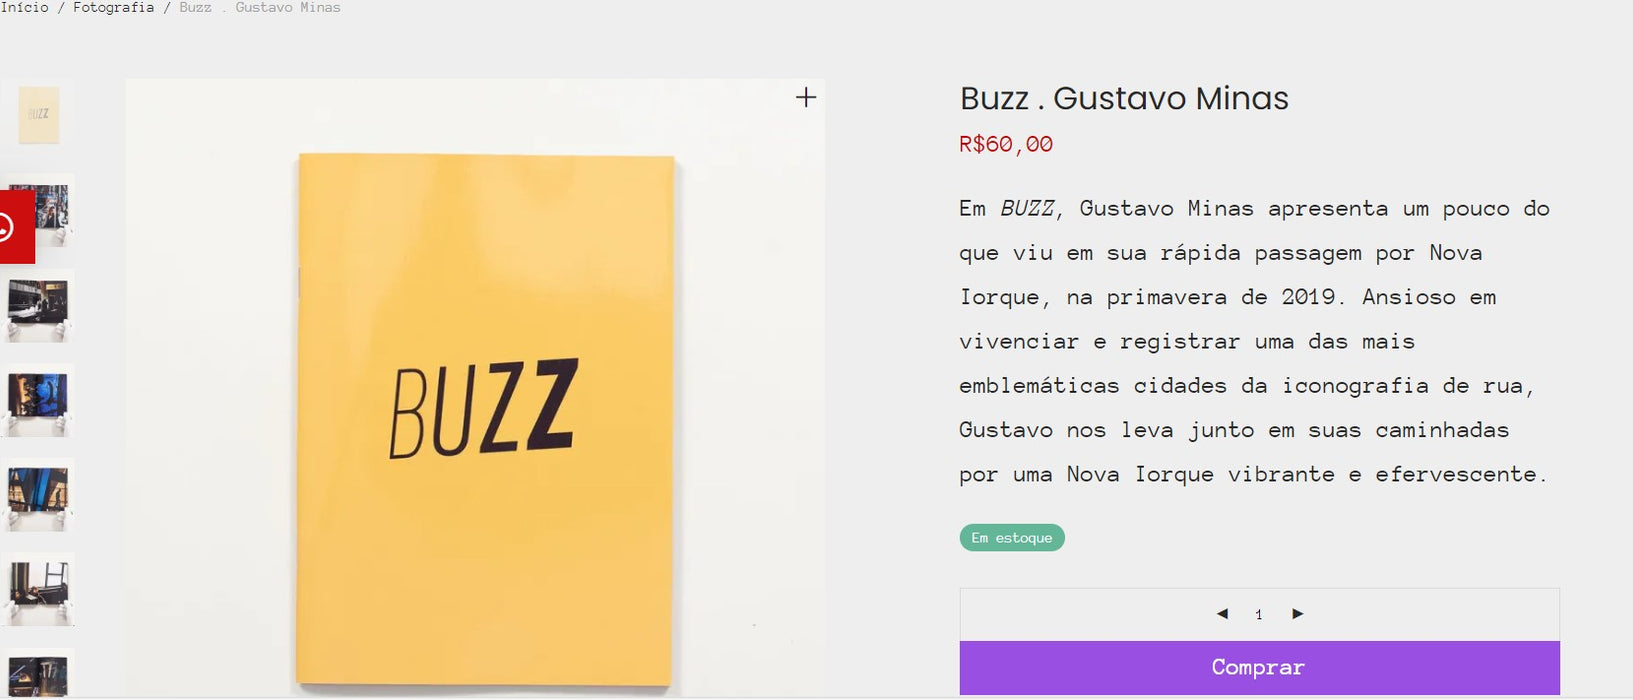 个人客户 | 从巴西购买 - BBuzz。 Gustavo Minas - 1 项目 - DDP